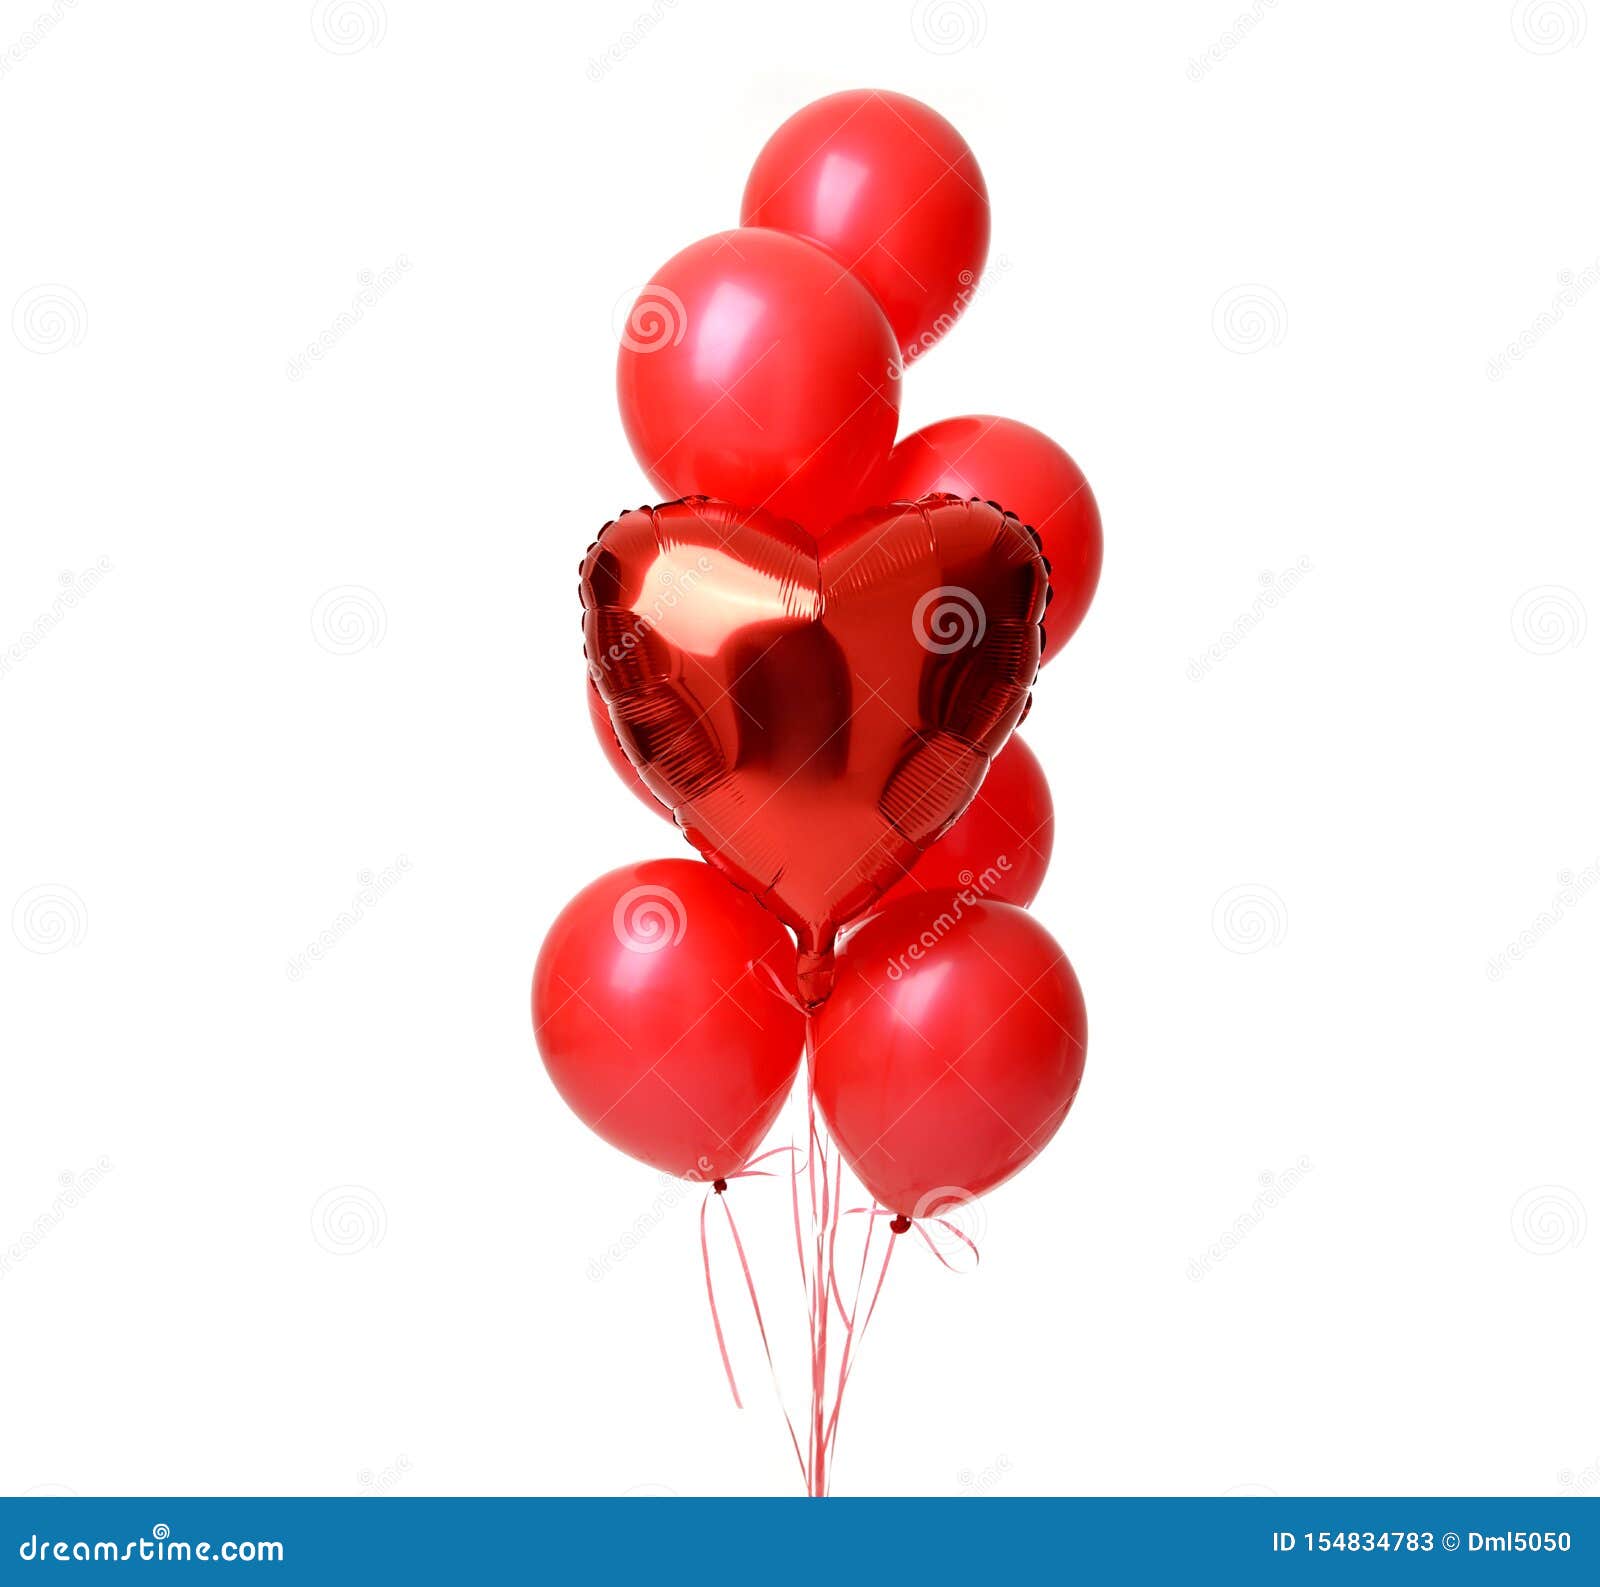 fiesta de cumpleaños de manojo de globos rojos 13362732 PNG